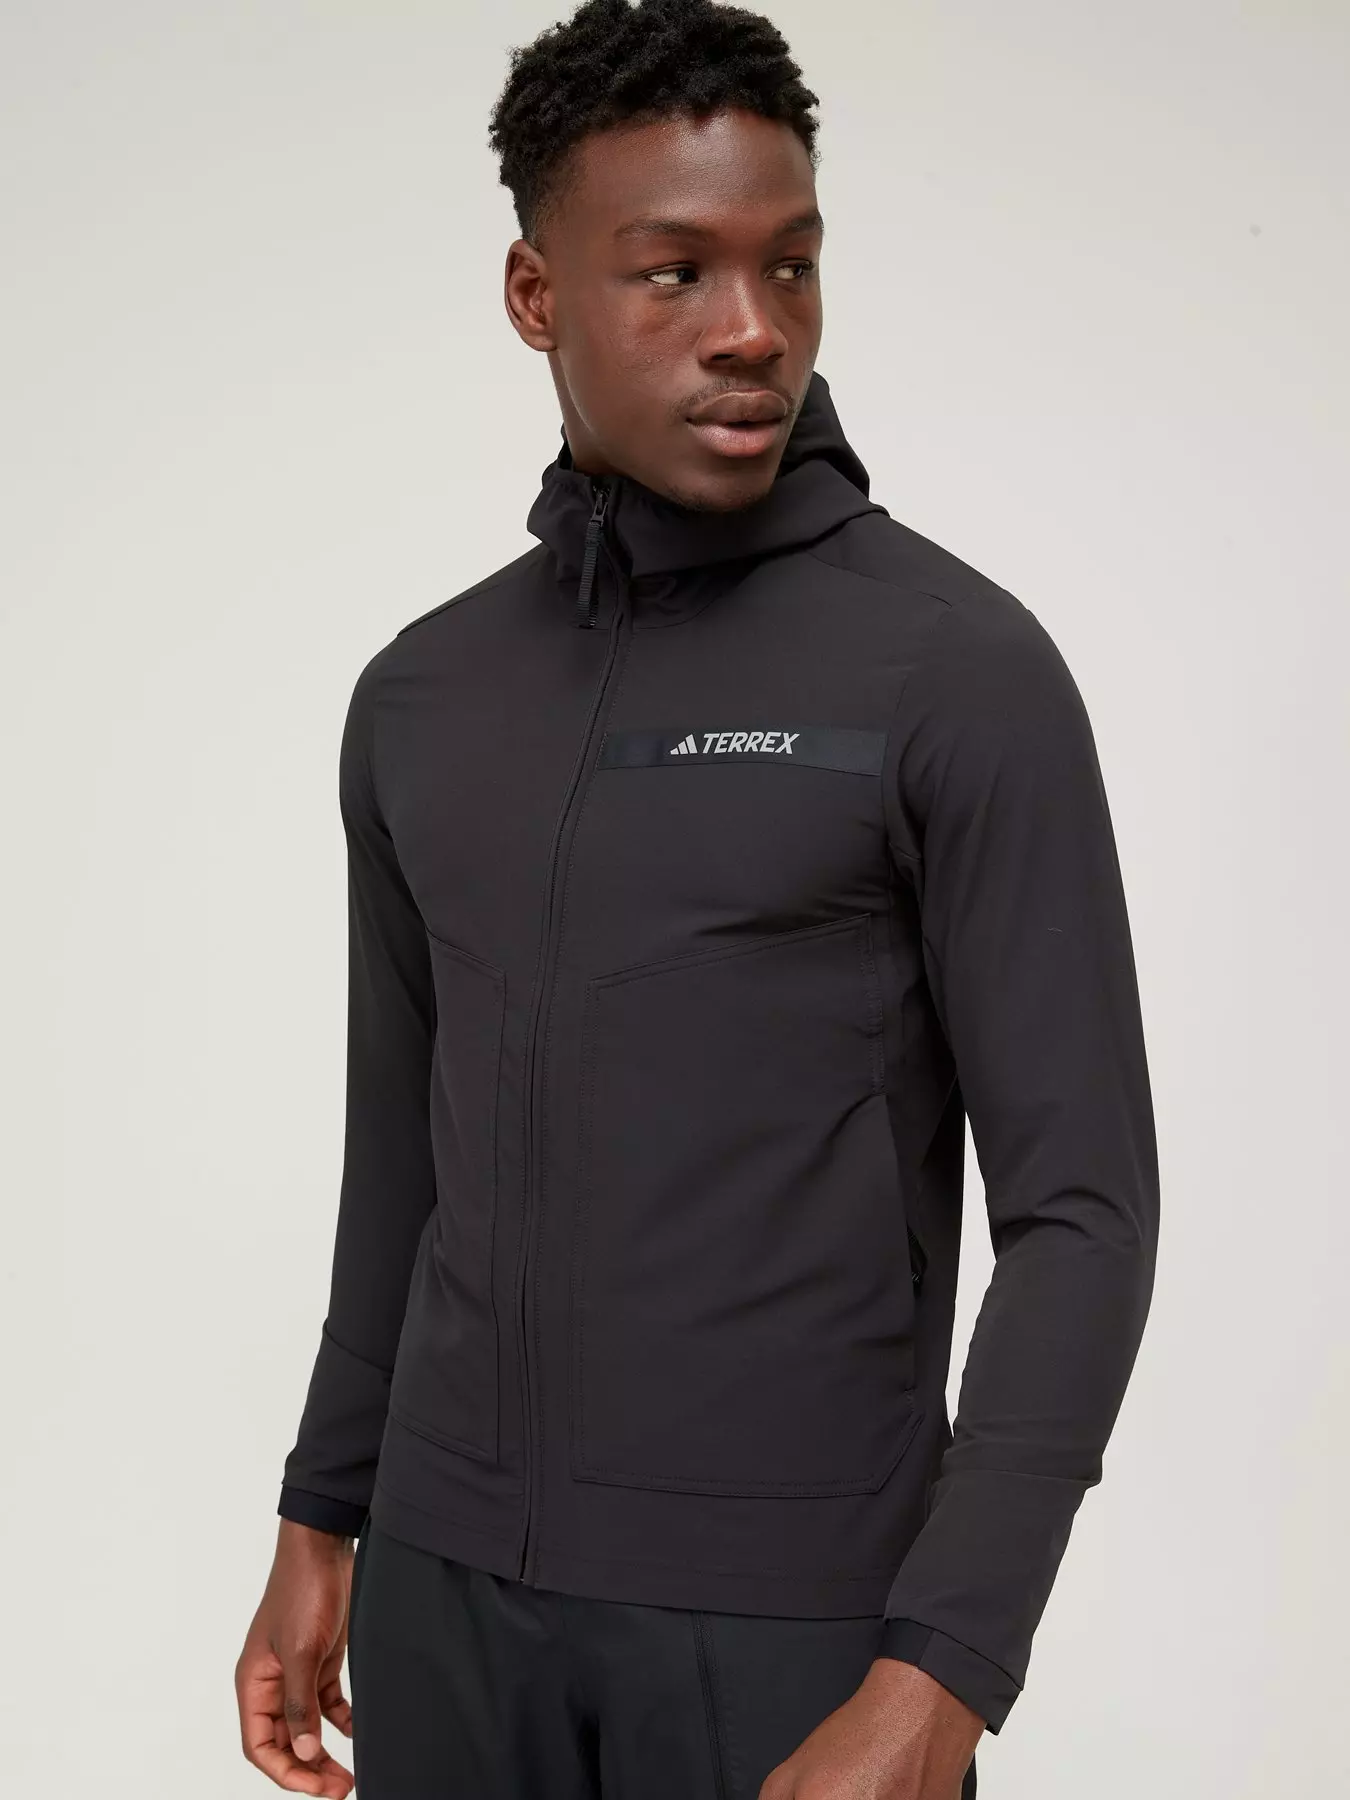 Adidas Originals Mens Navy Soft Shell Track Jacket